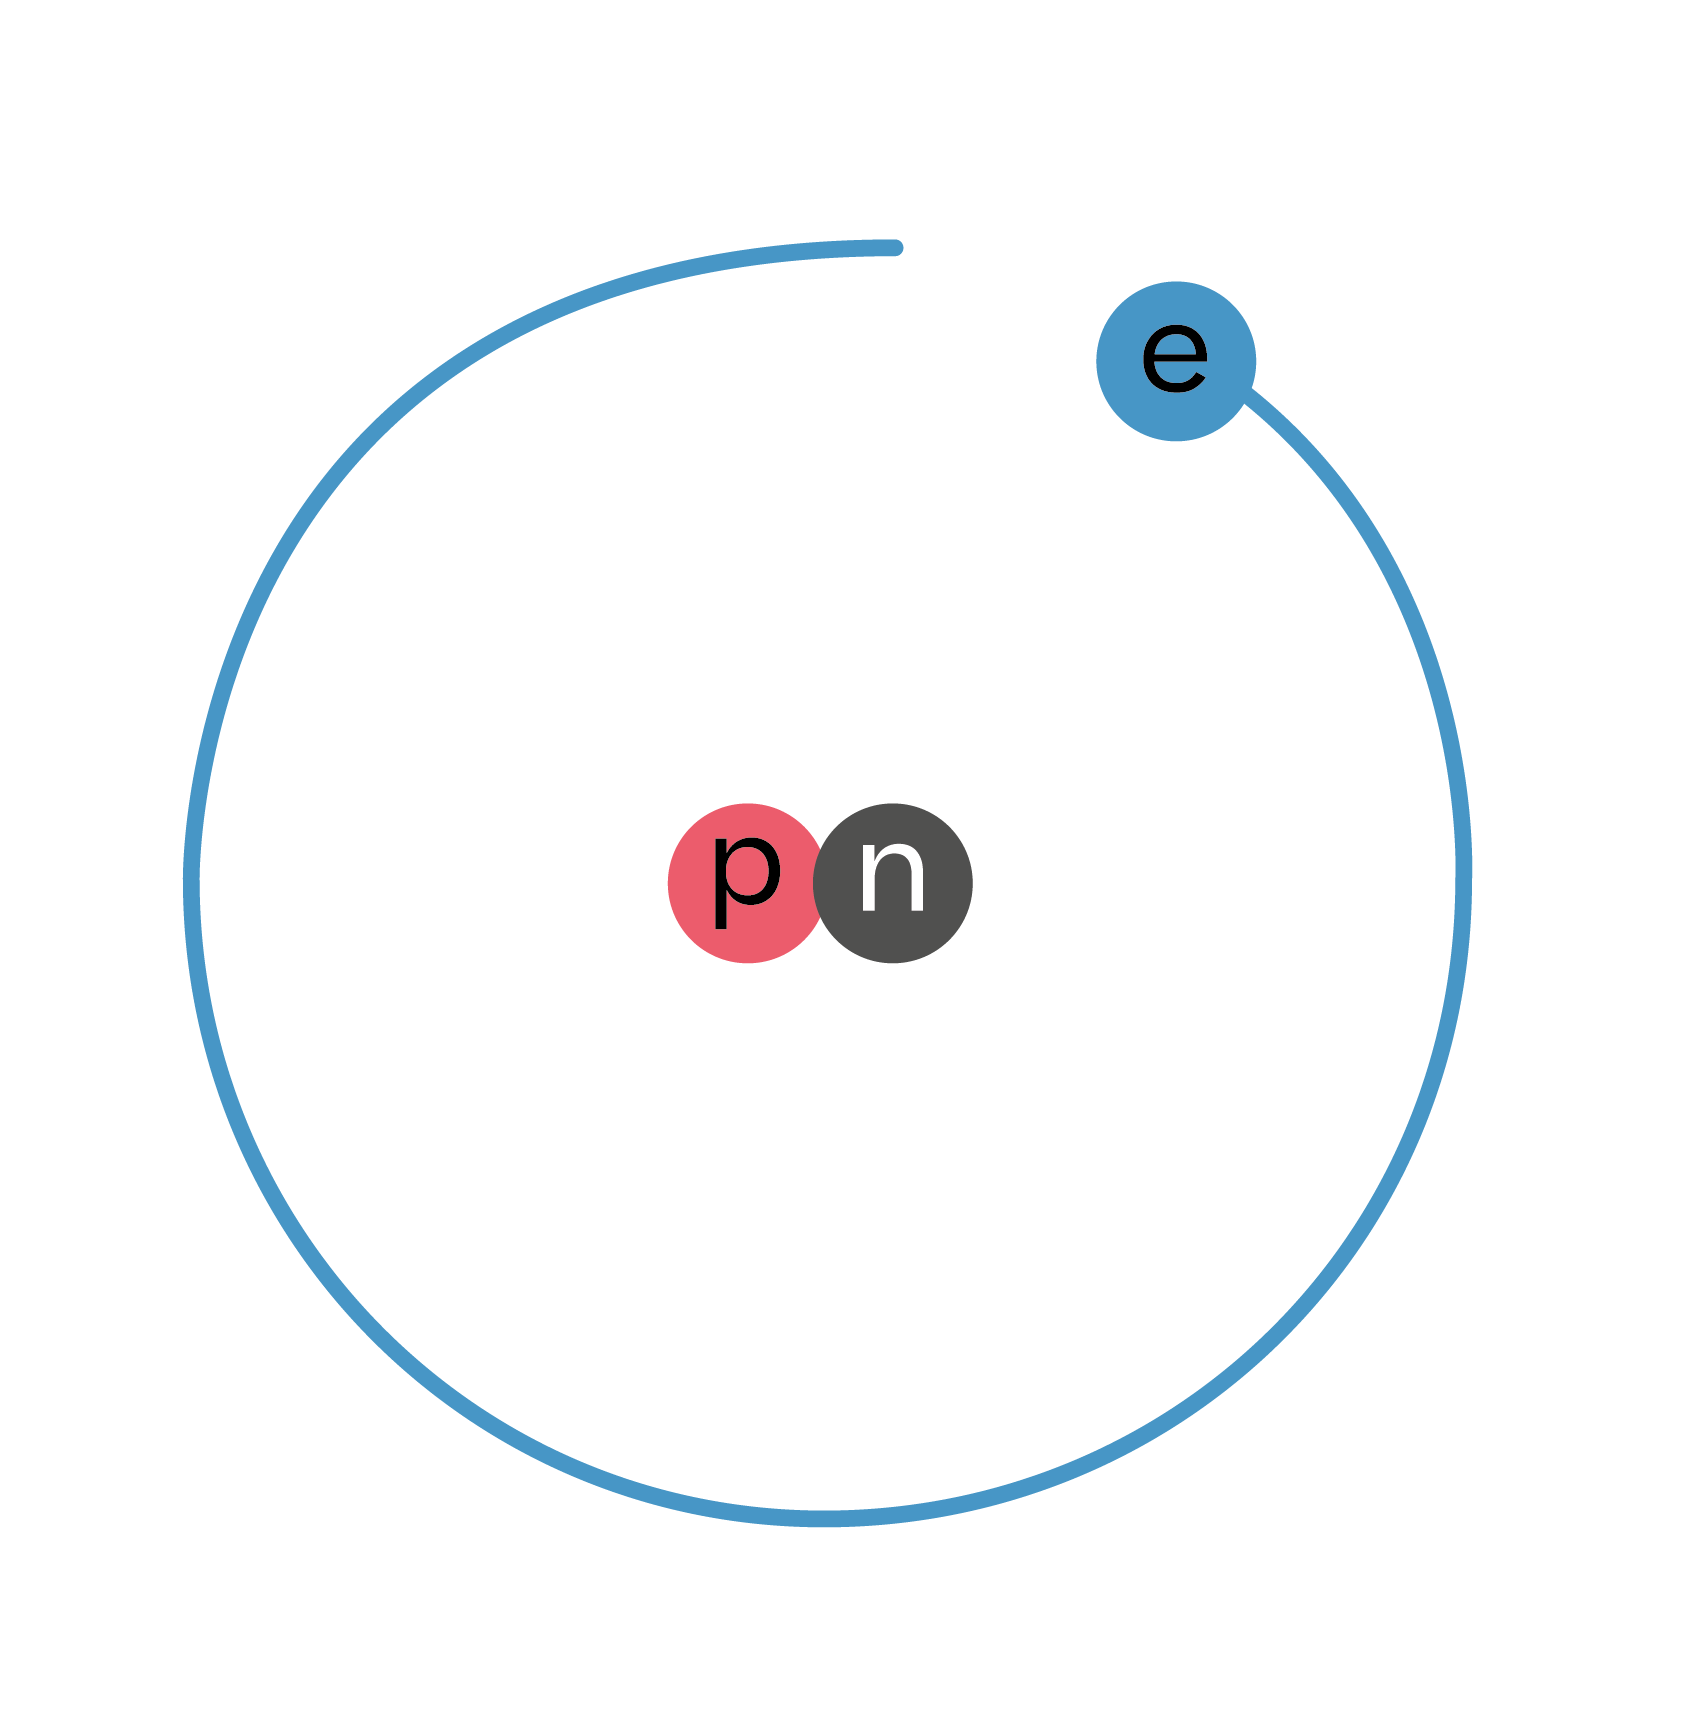 Física y Química; El átomo; 1. Bachillerato; Isótopos: Abundancia y cálculos de masa atómica